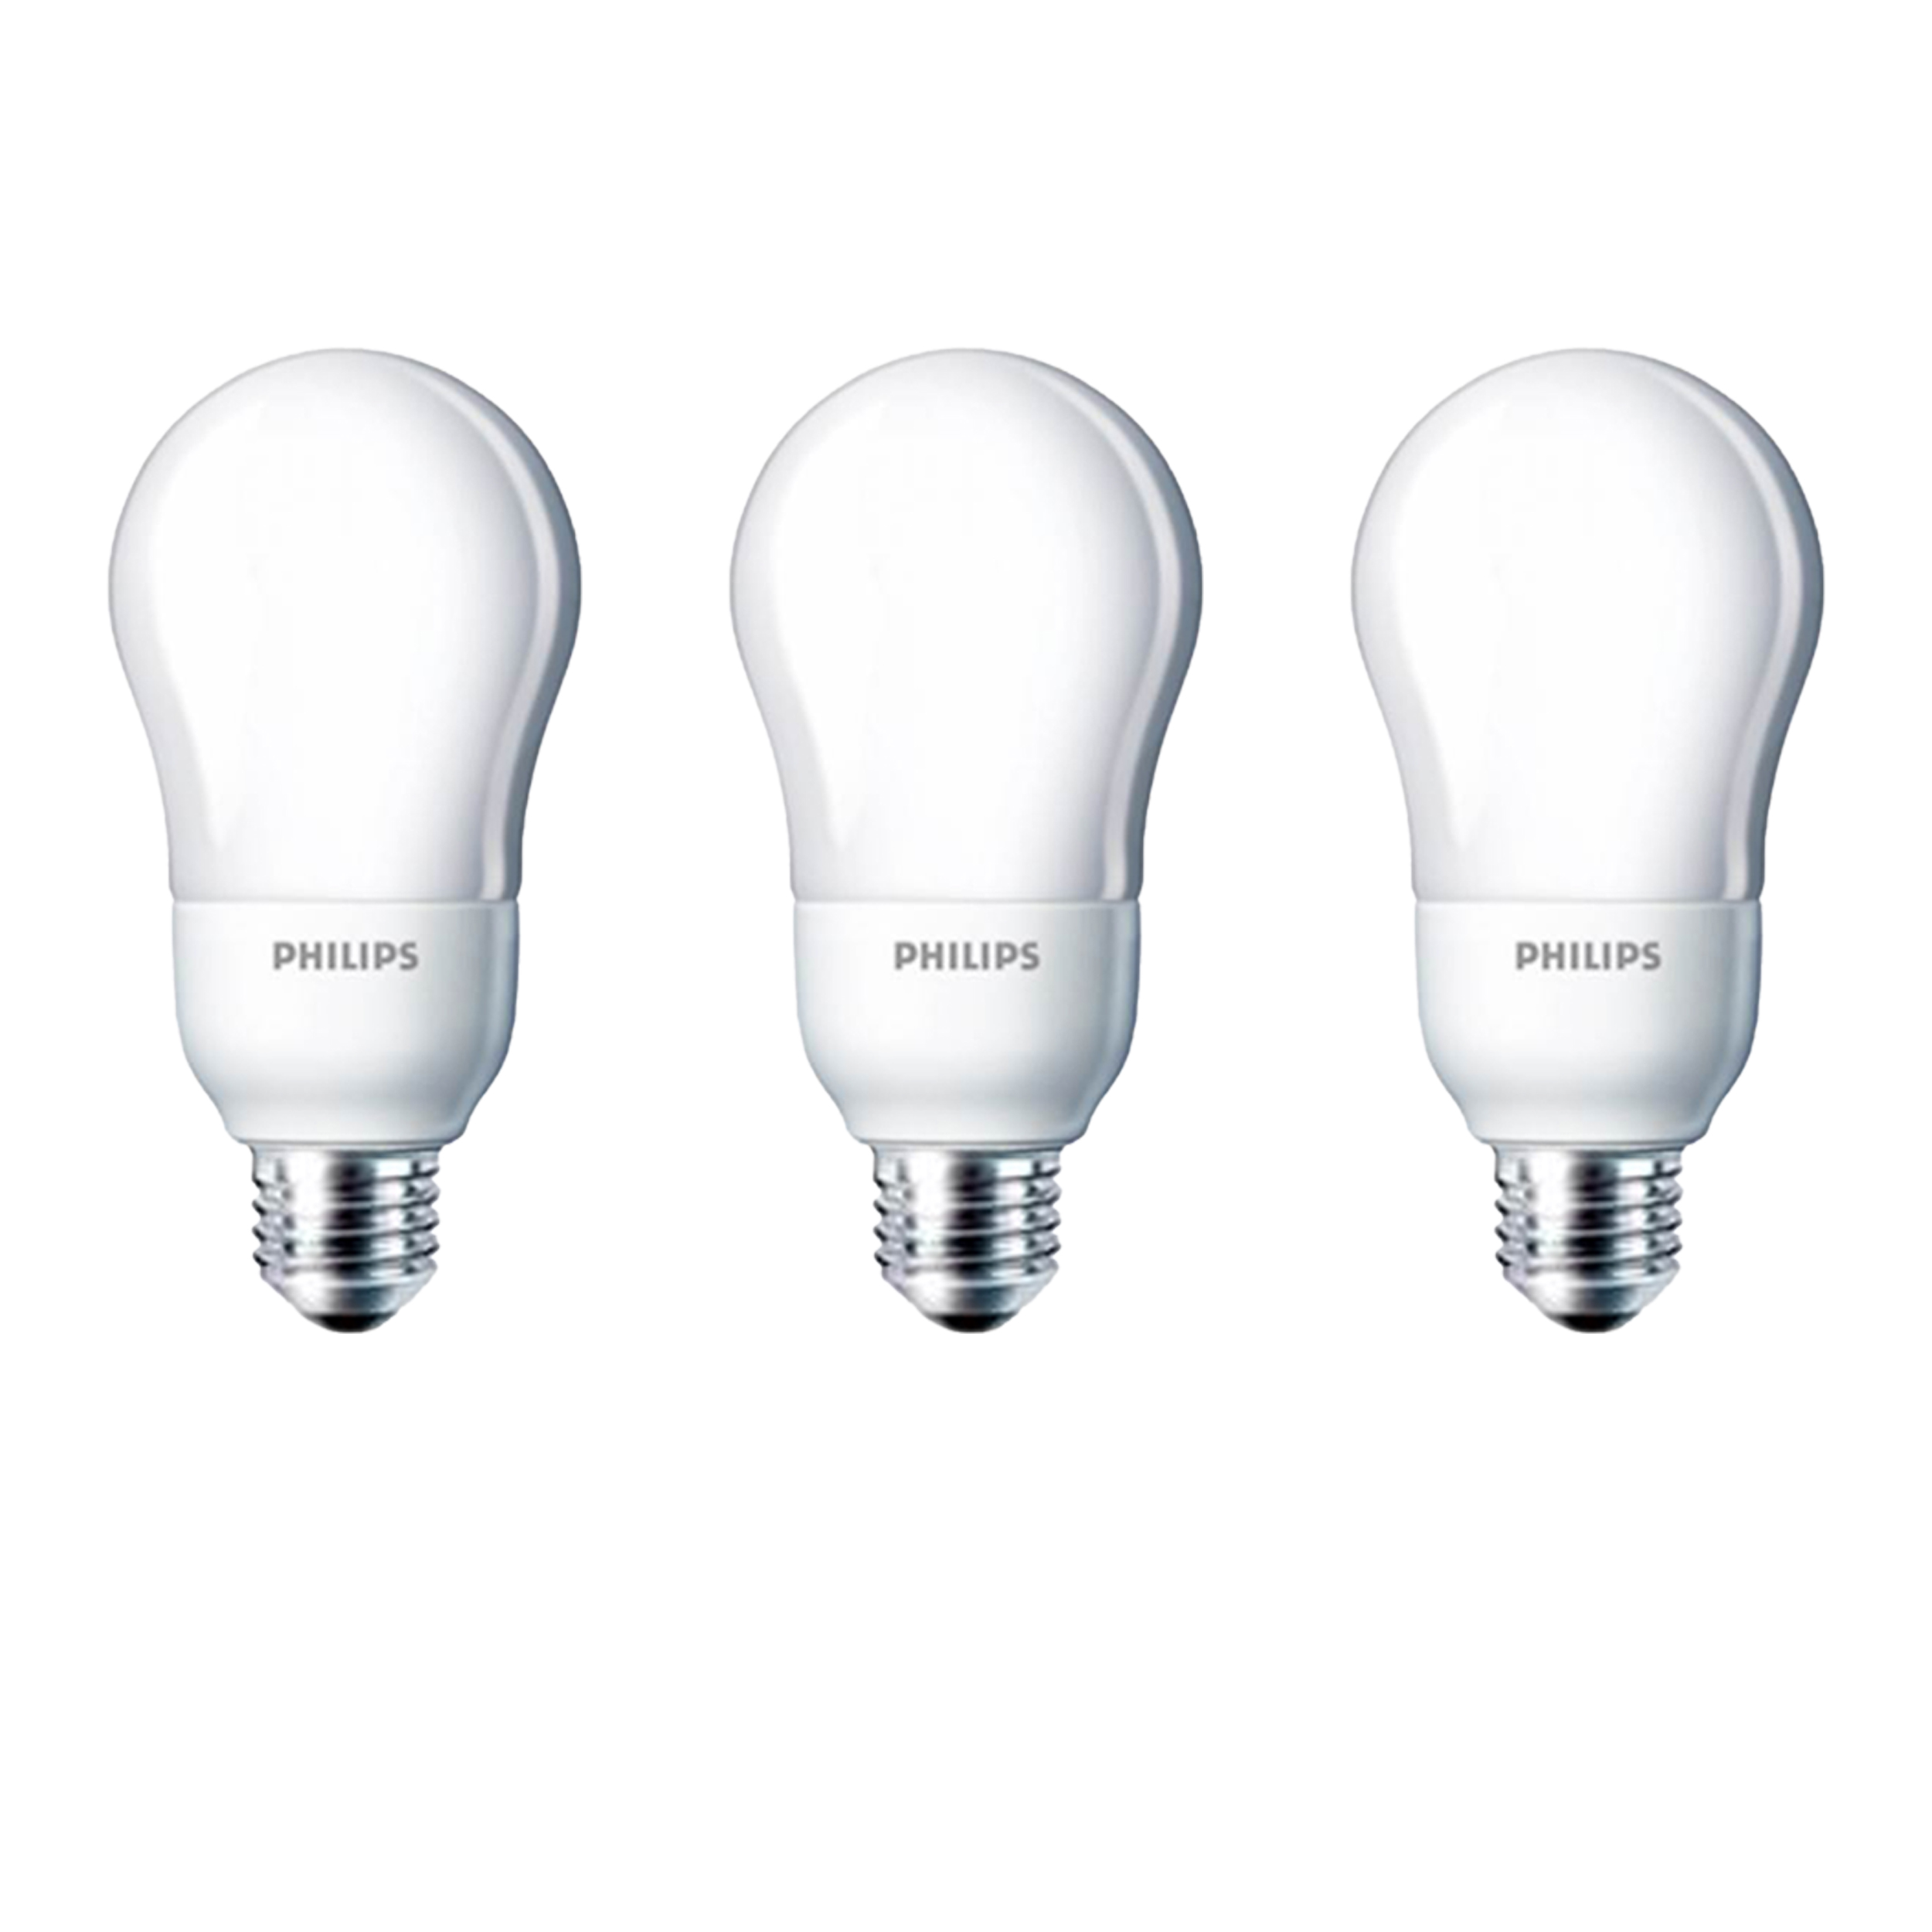 لامپ کم مصرف 18 وات فیلیپس مدل Ambiance Bulb پایه E27 بسته 3 عددی